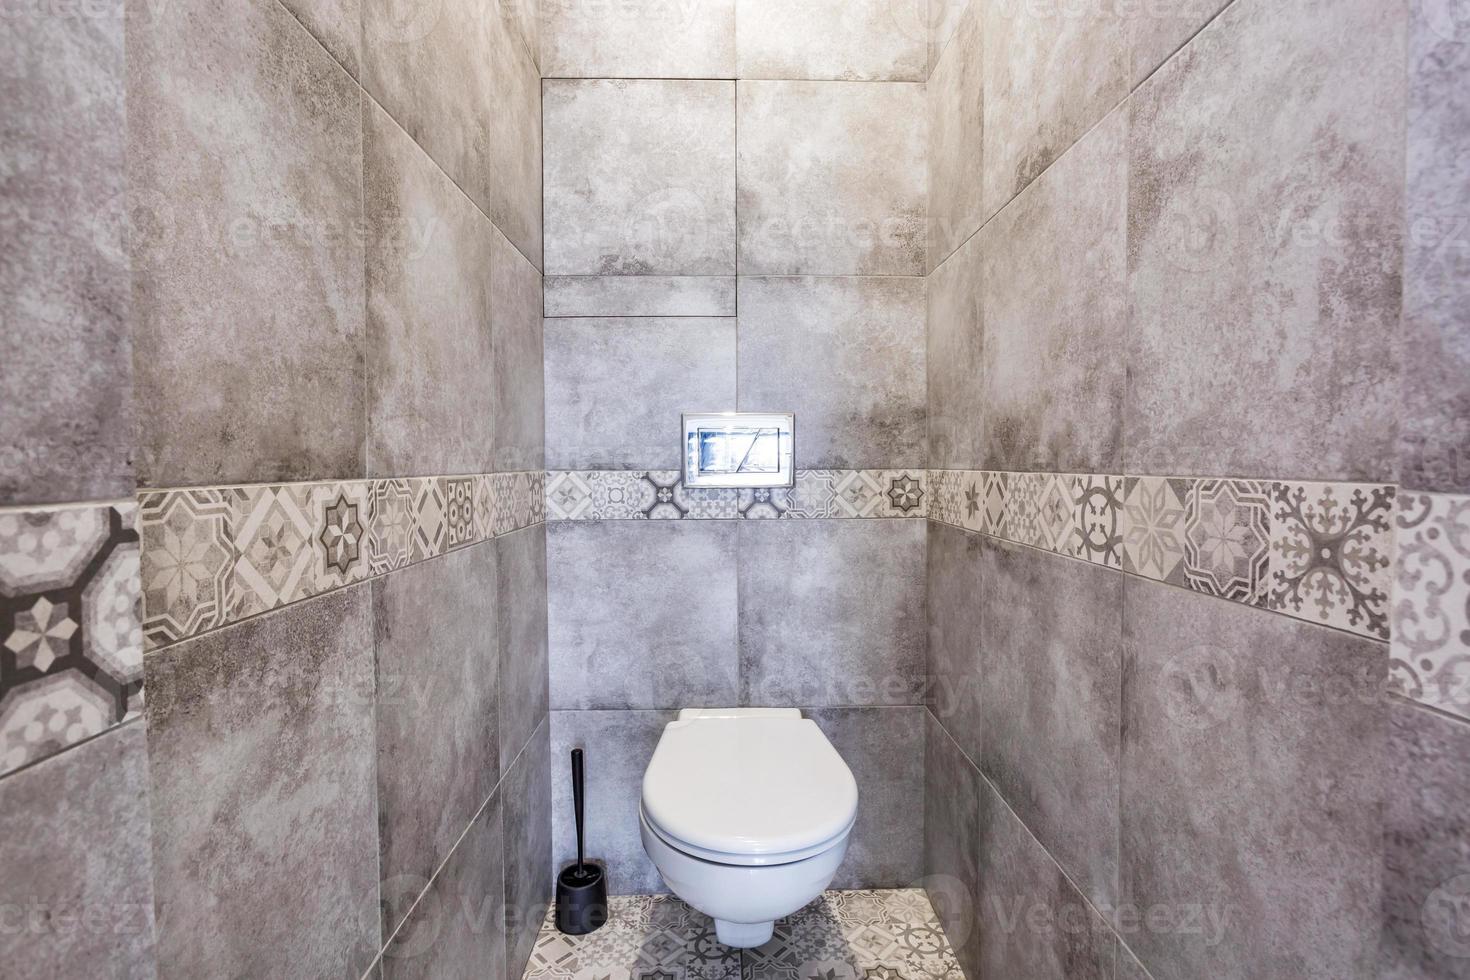 WC und Detail eines Eck-Dusch-Bidets mit Wandhalterung foto